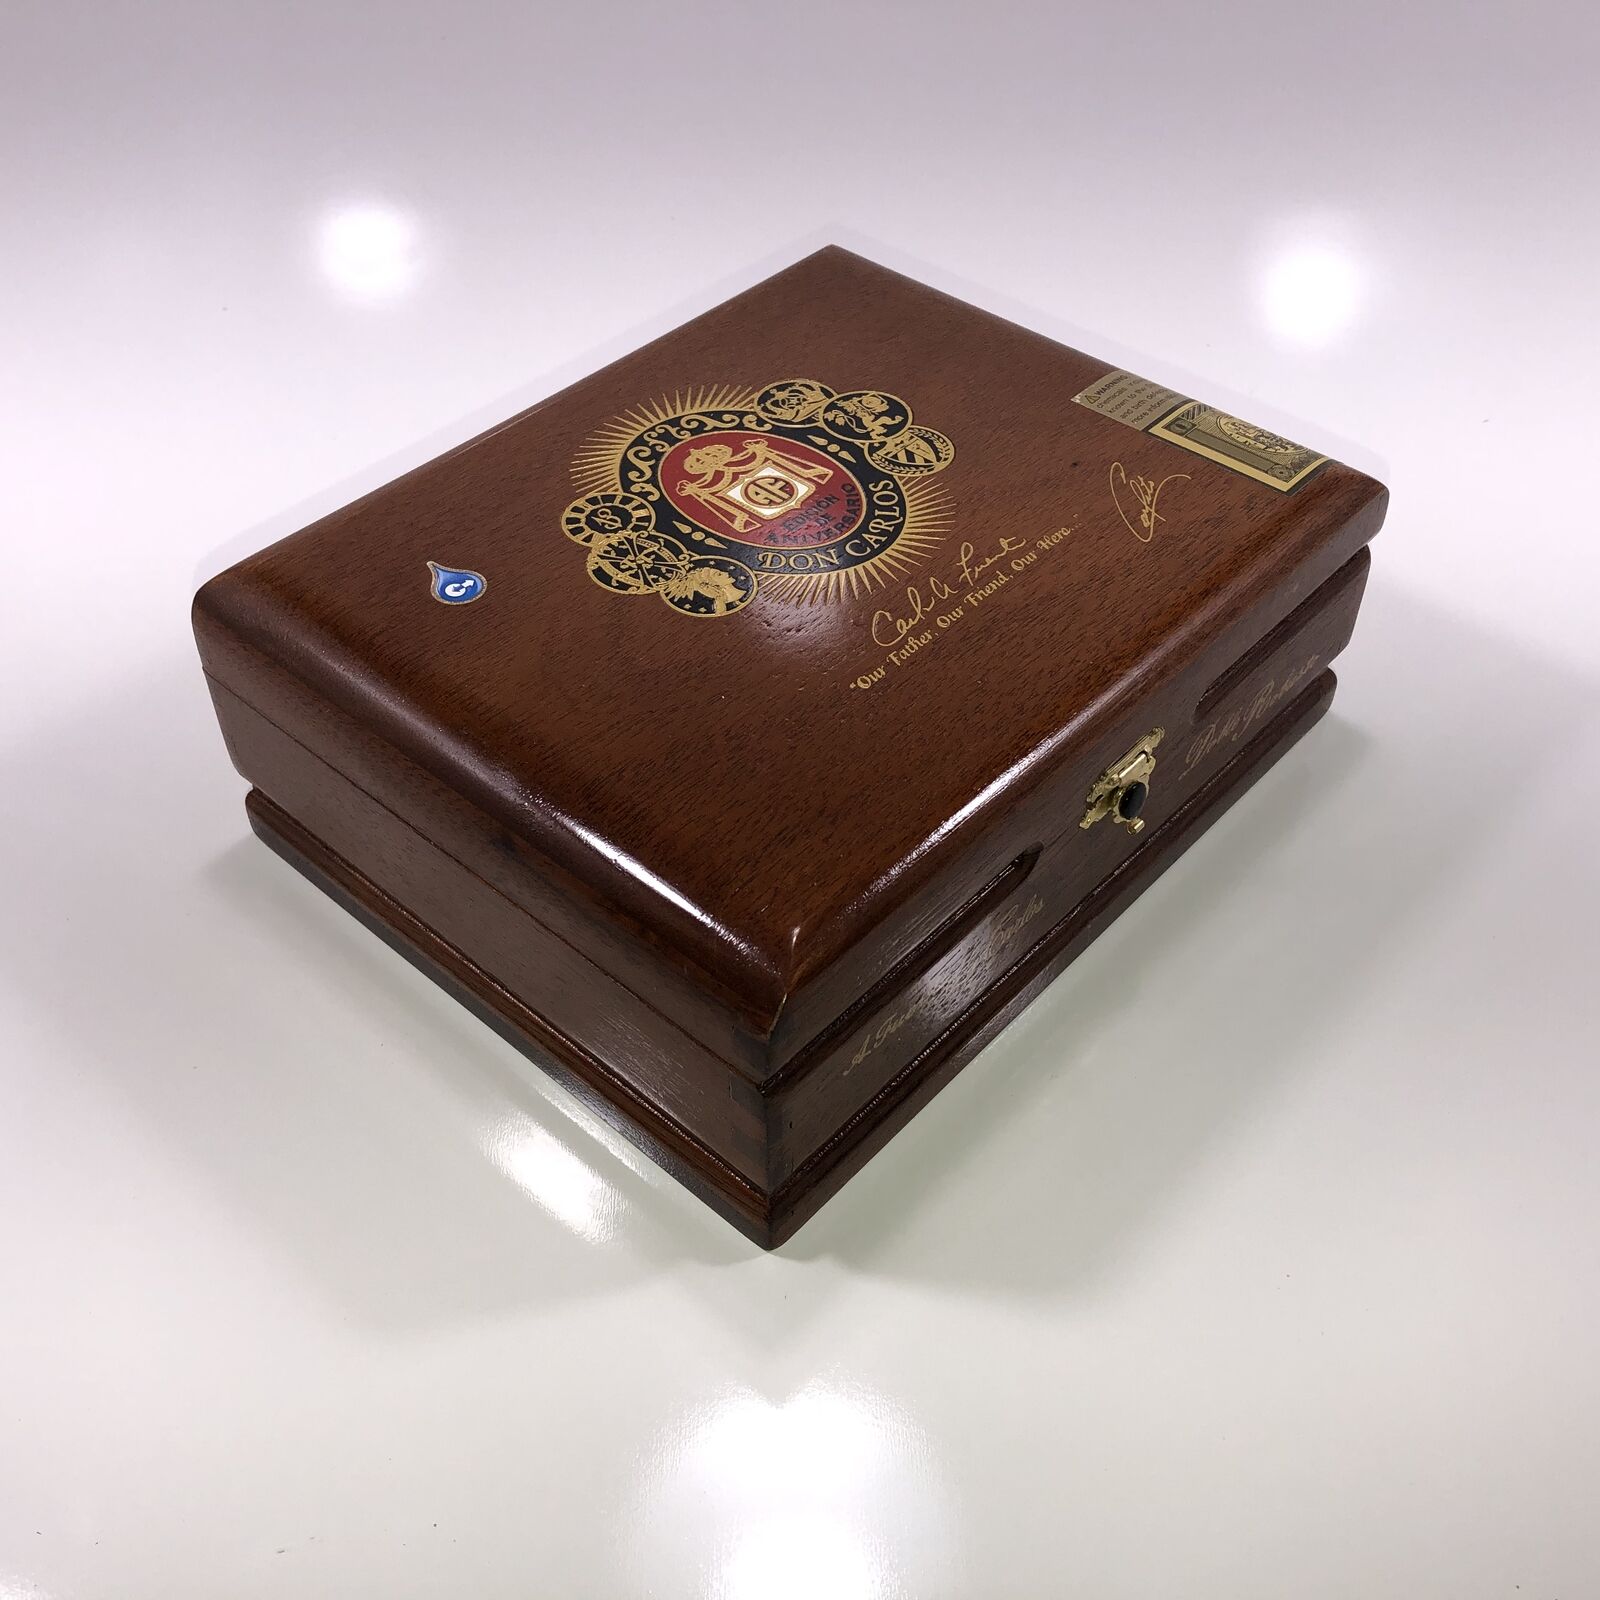 Arturo Fuente Don Carlos Doble Robusto Empty Wooden Cigar Box 8.25x6.5x3